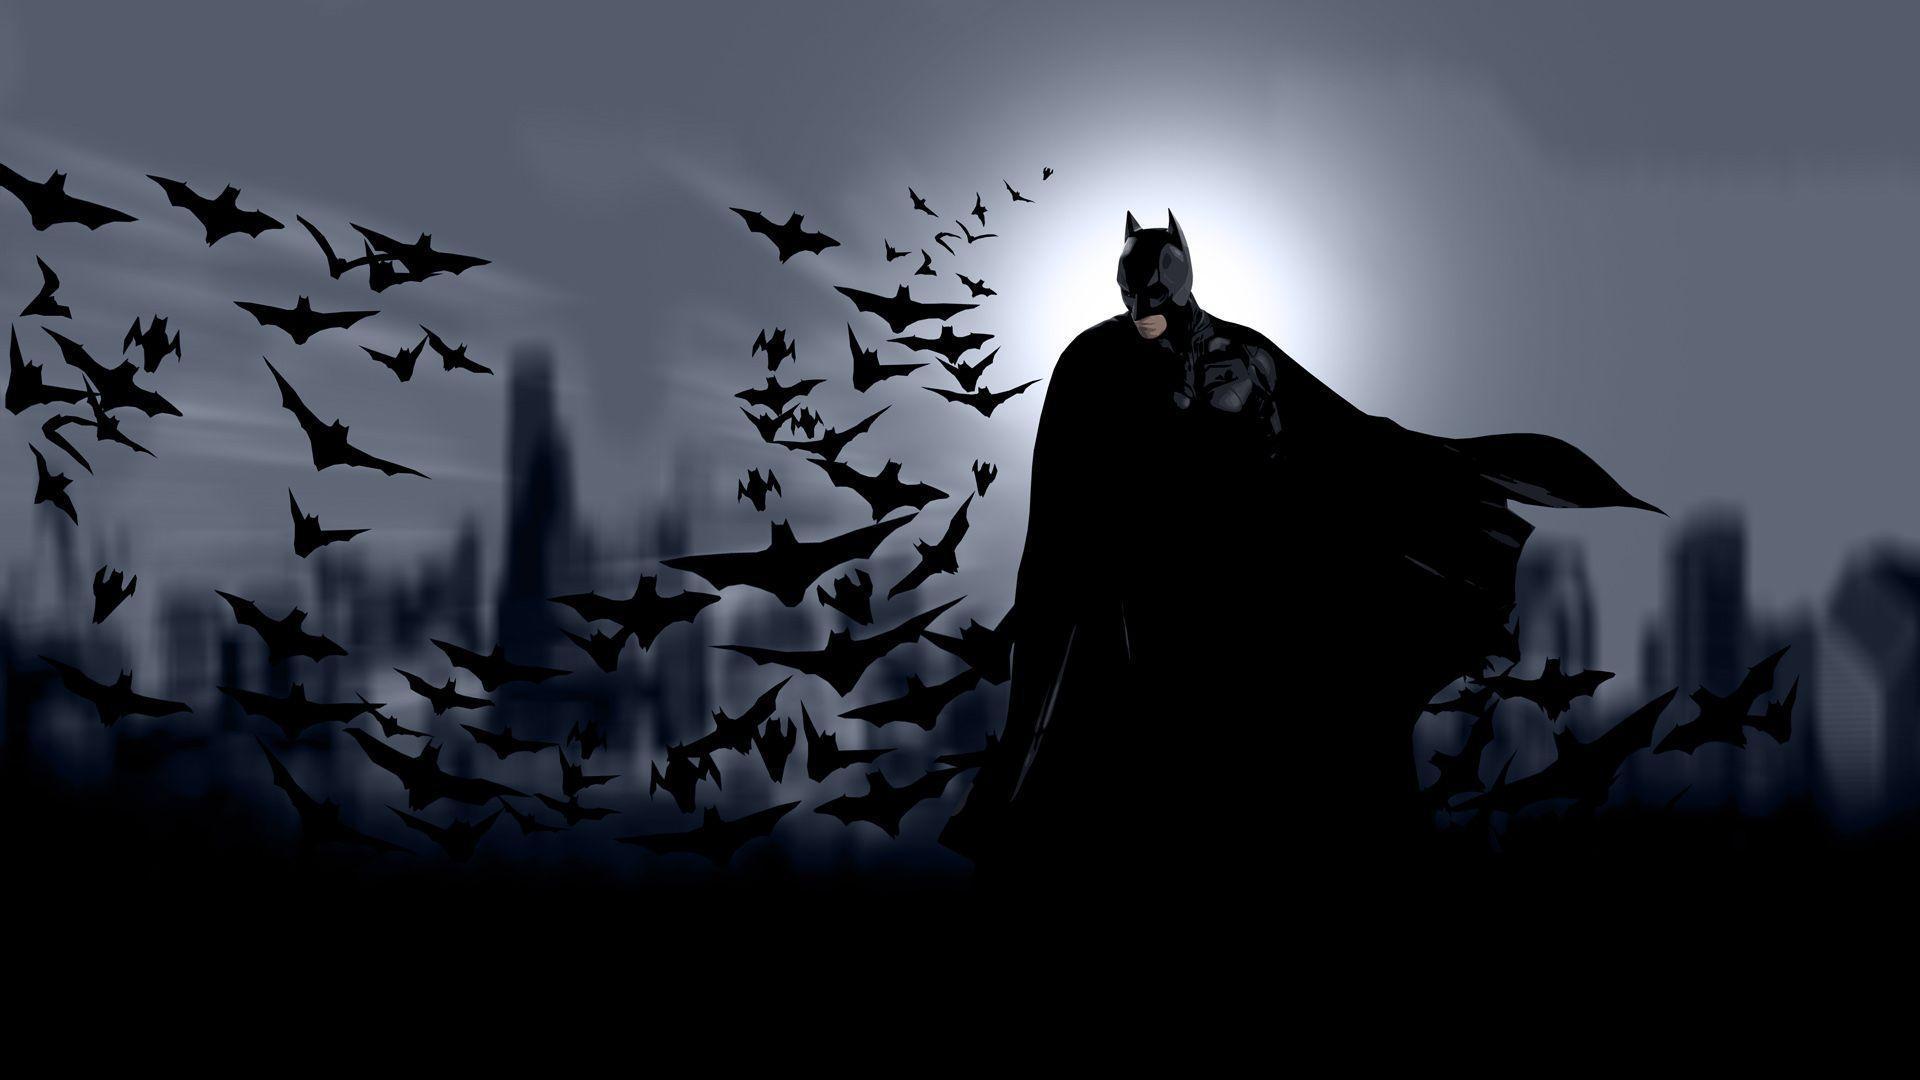 Batman And Bats 3D Live Wallpaper < 3D Art < Gallery < Desktop